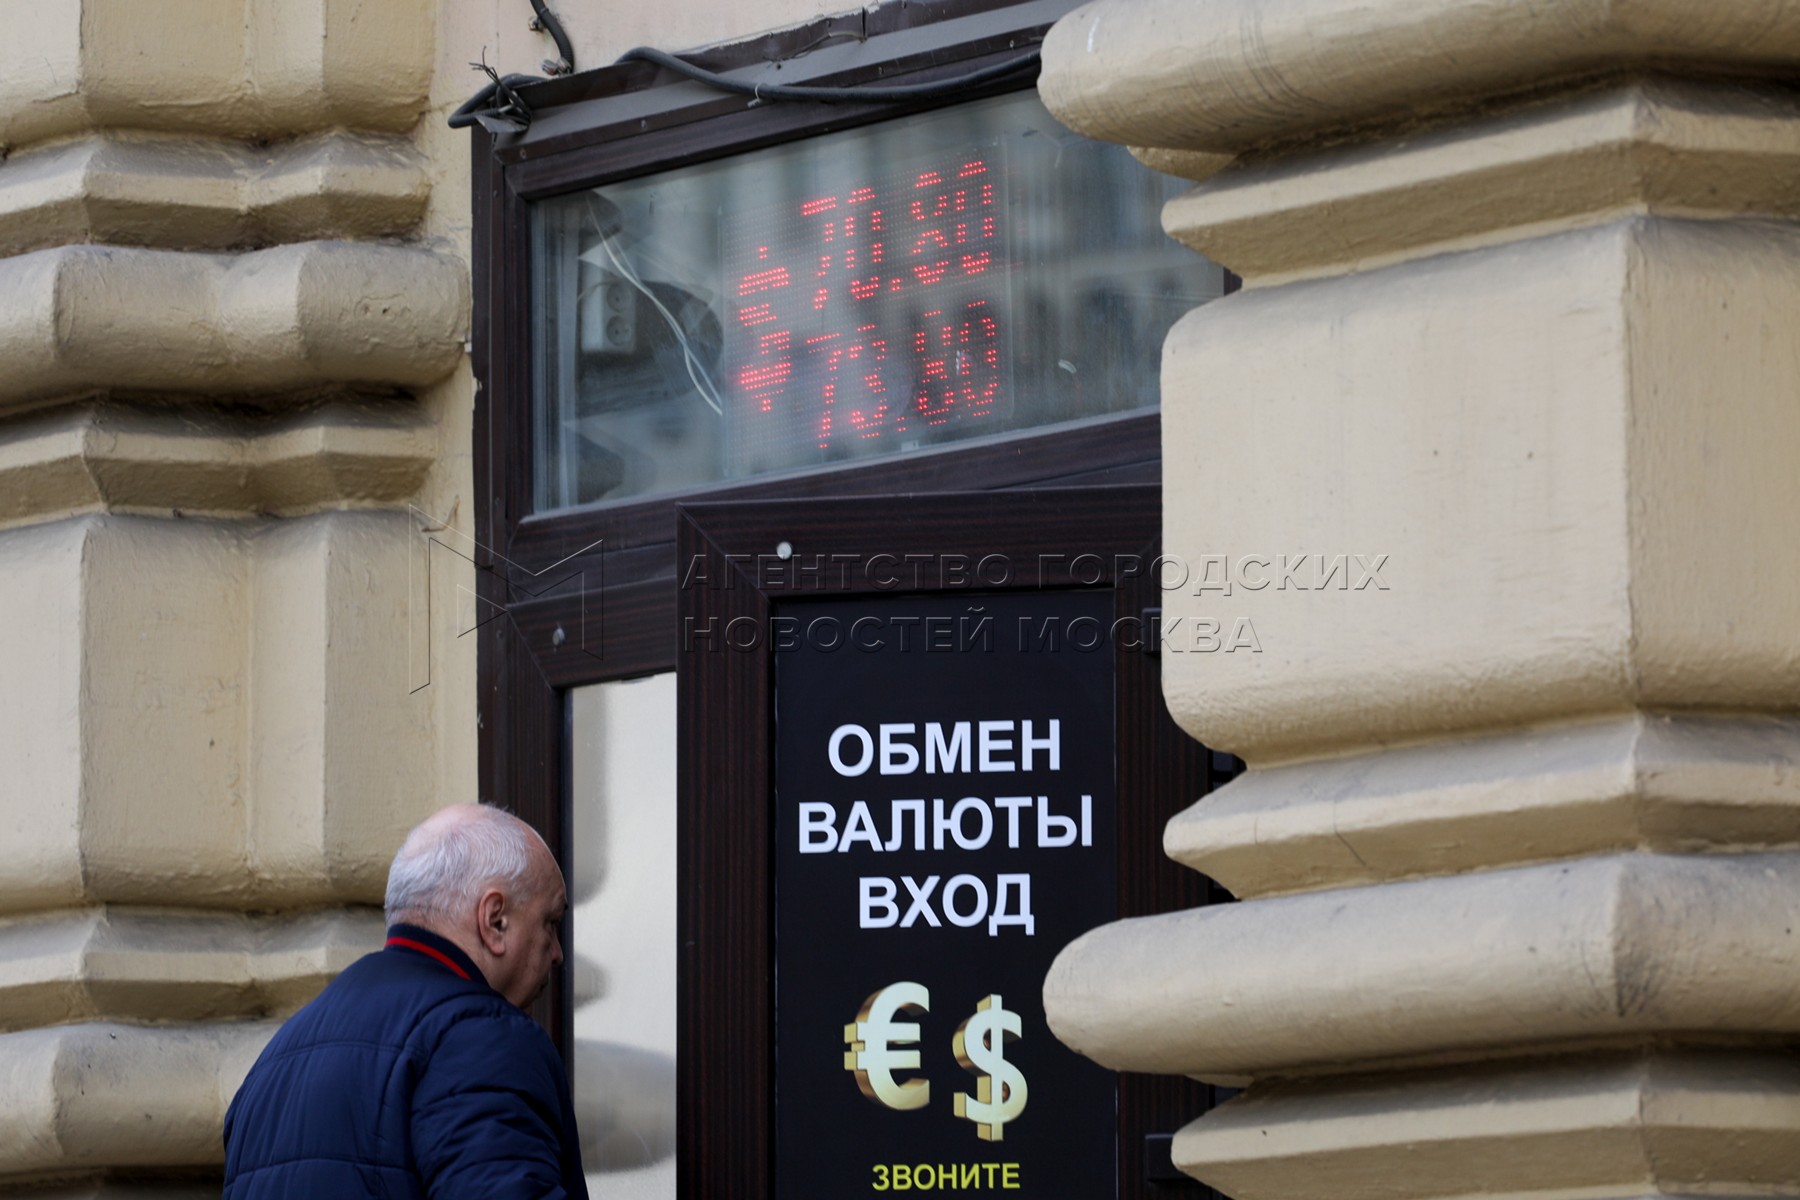 обмен валюты в обменных пунктах москве